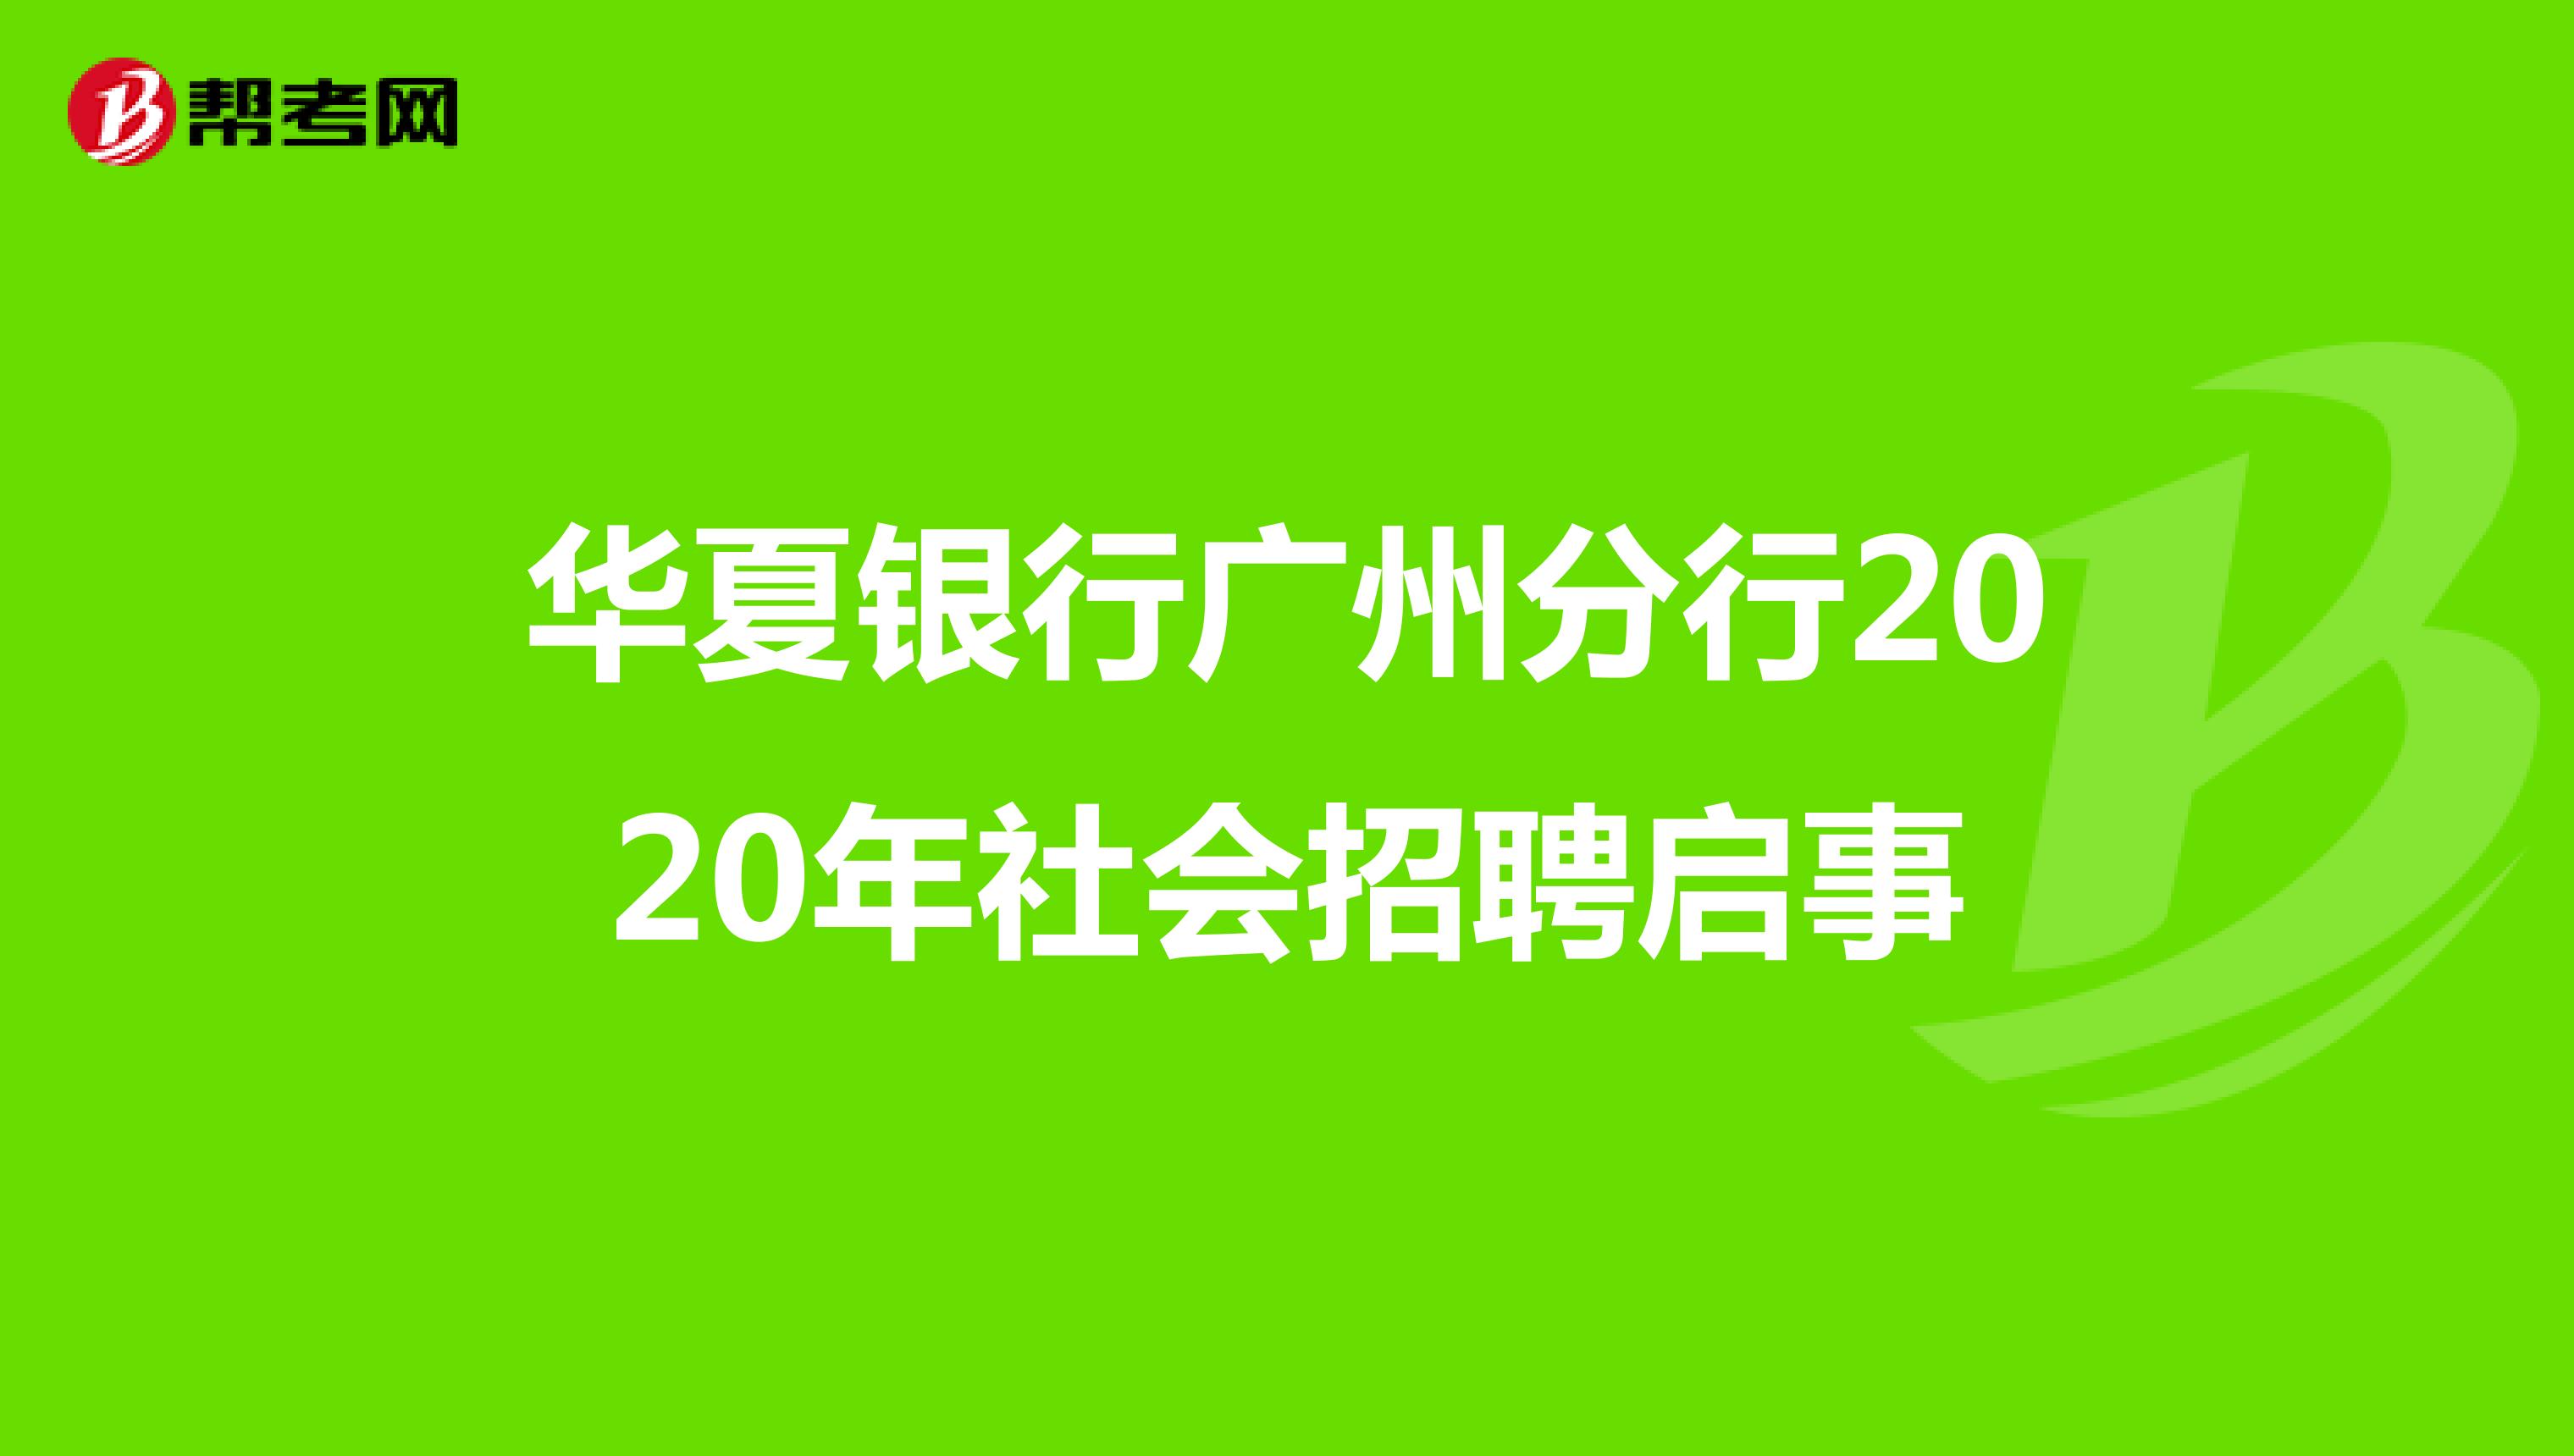 华夏银行广州分行2020年社会招聘启事